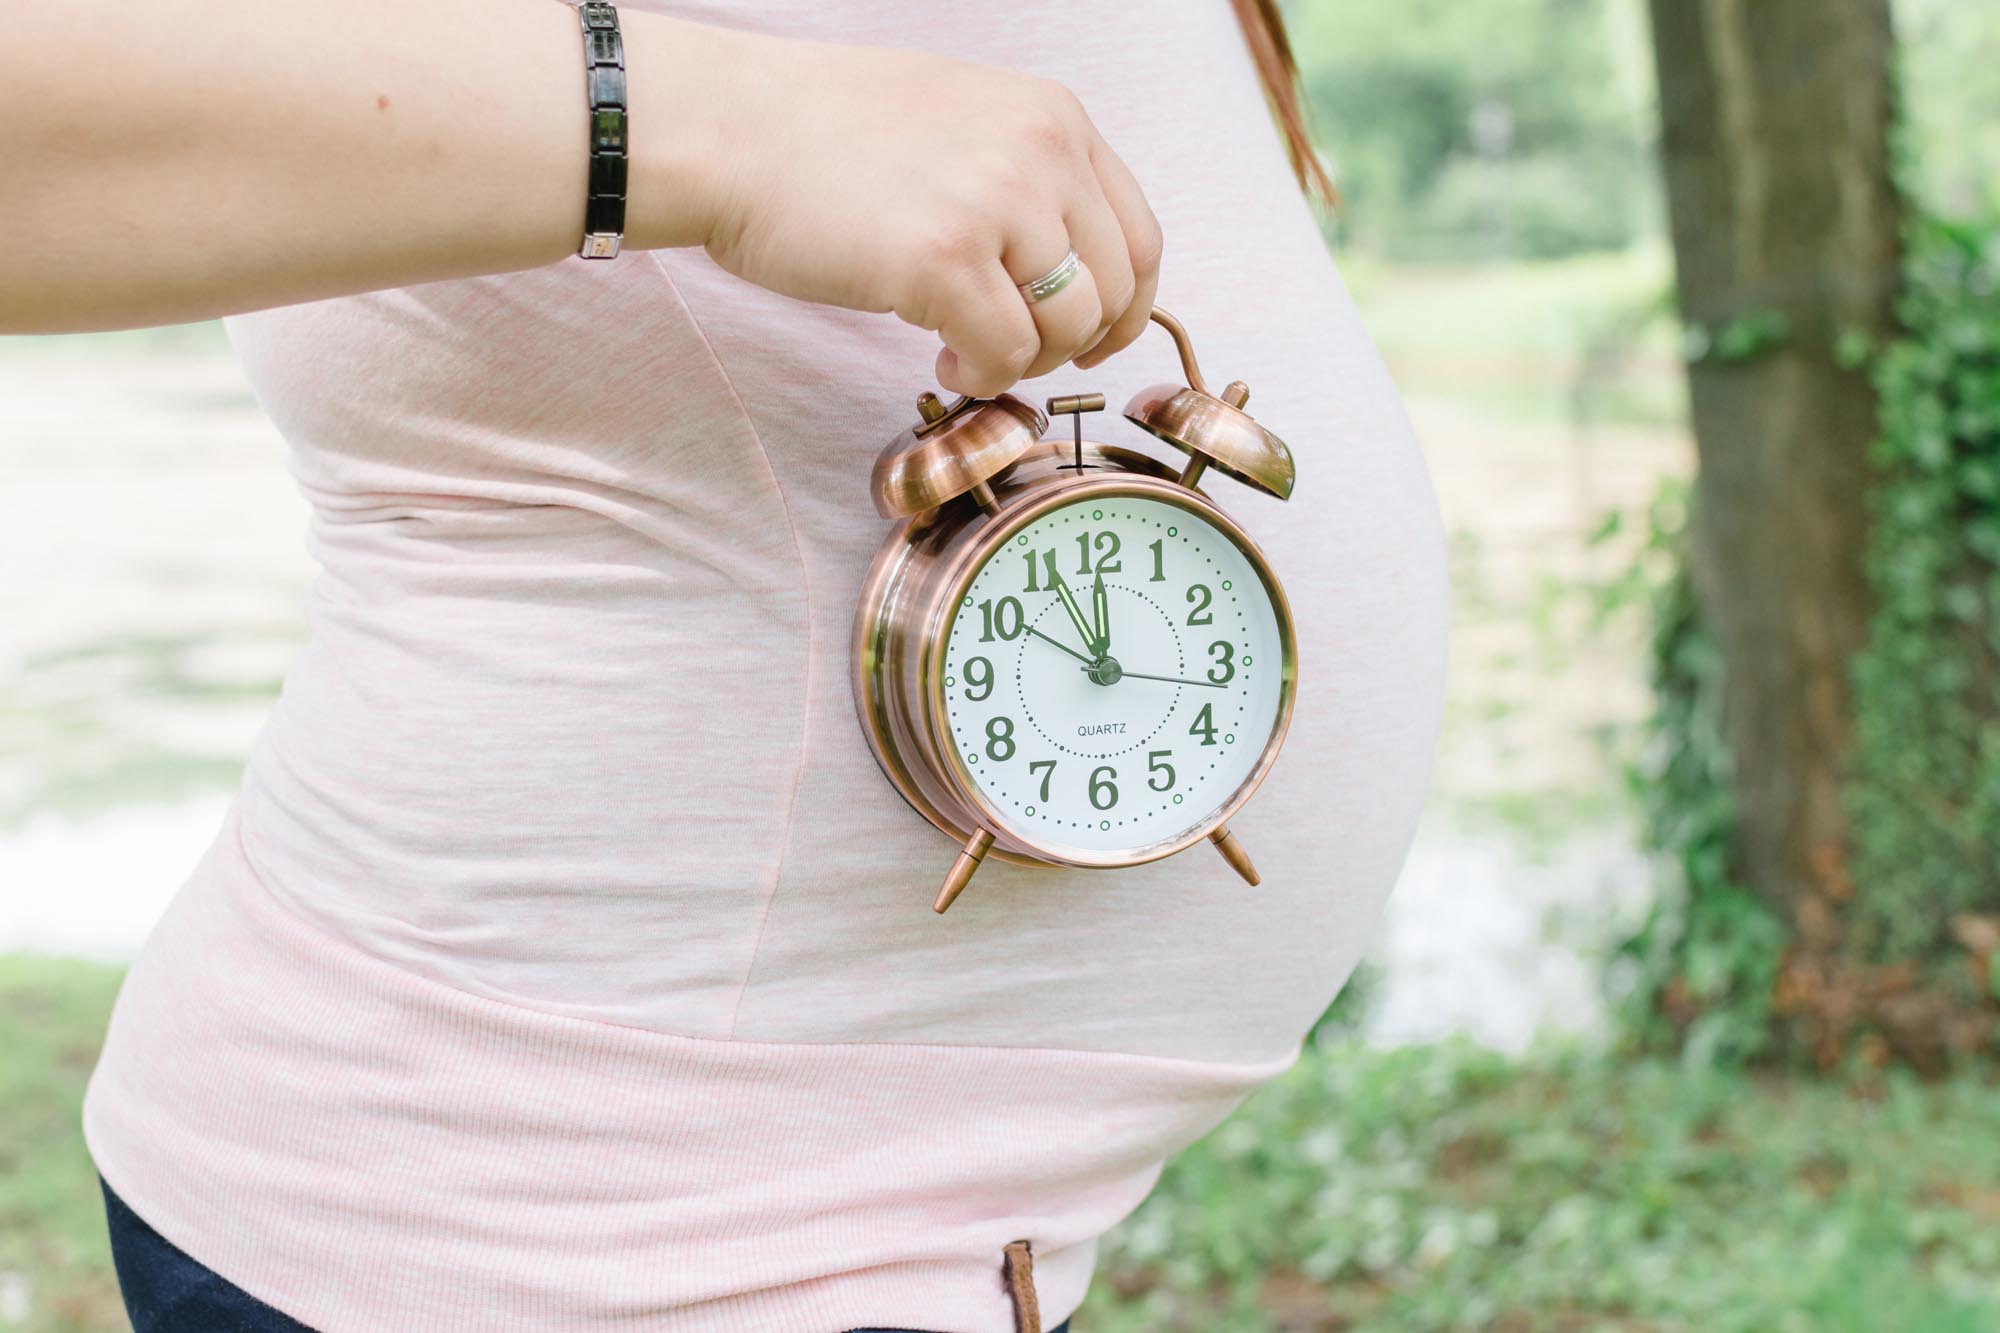 Babybauch_Schwangerschaftsshooting_Mama hält Uhr seitlich vom Babybauch